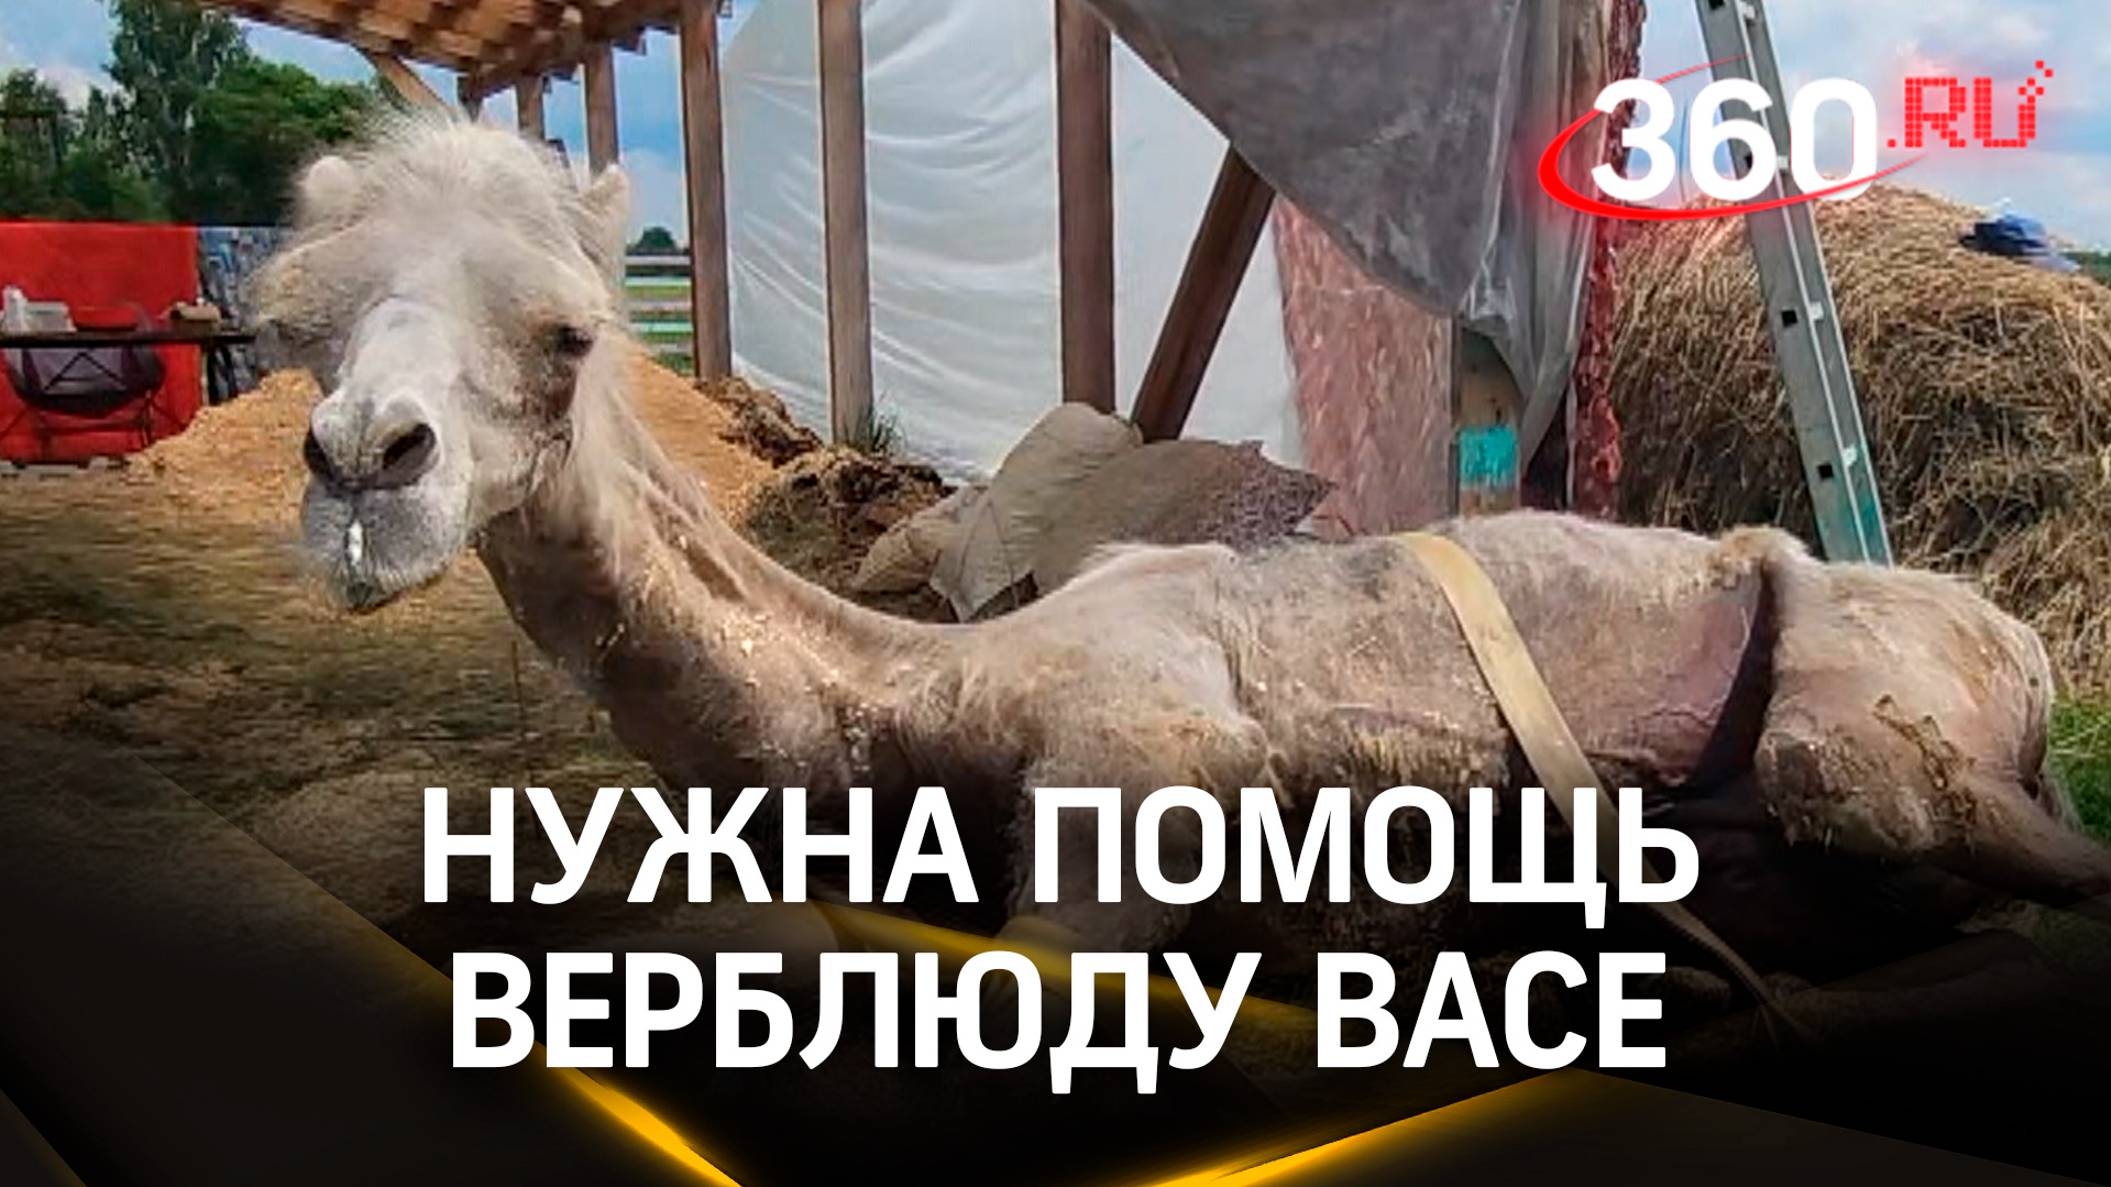 Верблюд Вася из Егорьевска серьёзно болен, не может ходить. Ему нужна помощь